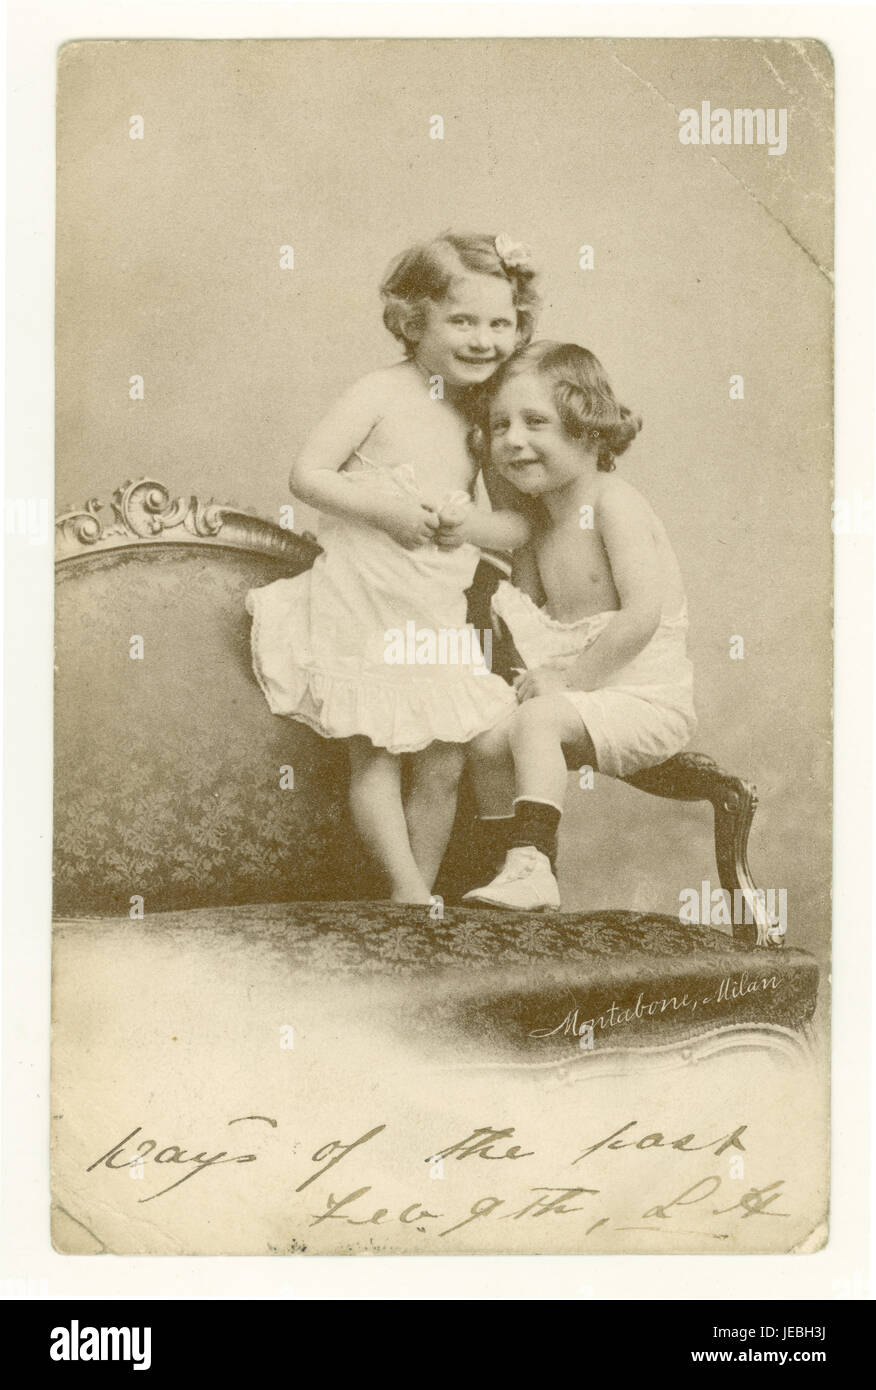 Original Edouardien époque carte postale de voeux de charme de deux jeunes enfants cuddling mignon, publié février 1904, Manchester, Angleterre, Royaume-Uni Banque D'Images